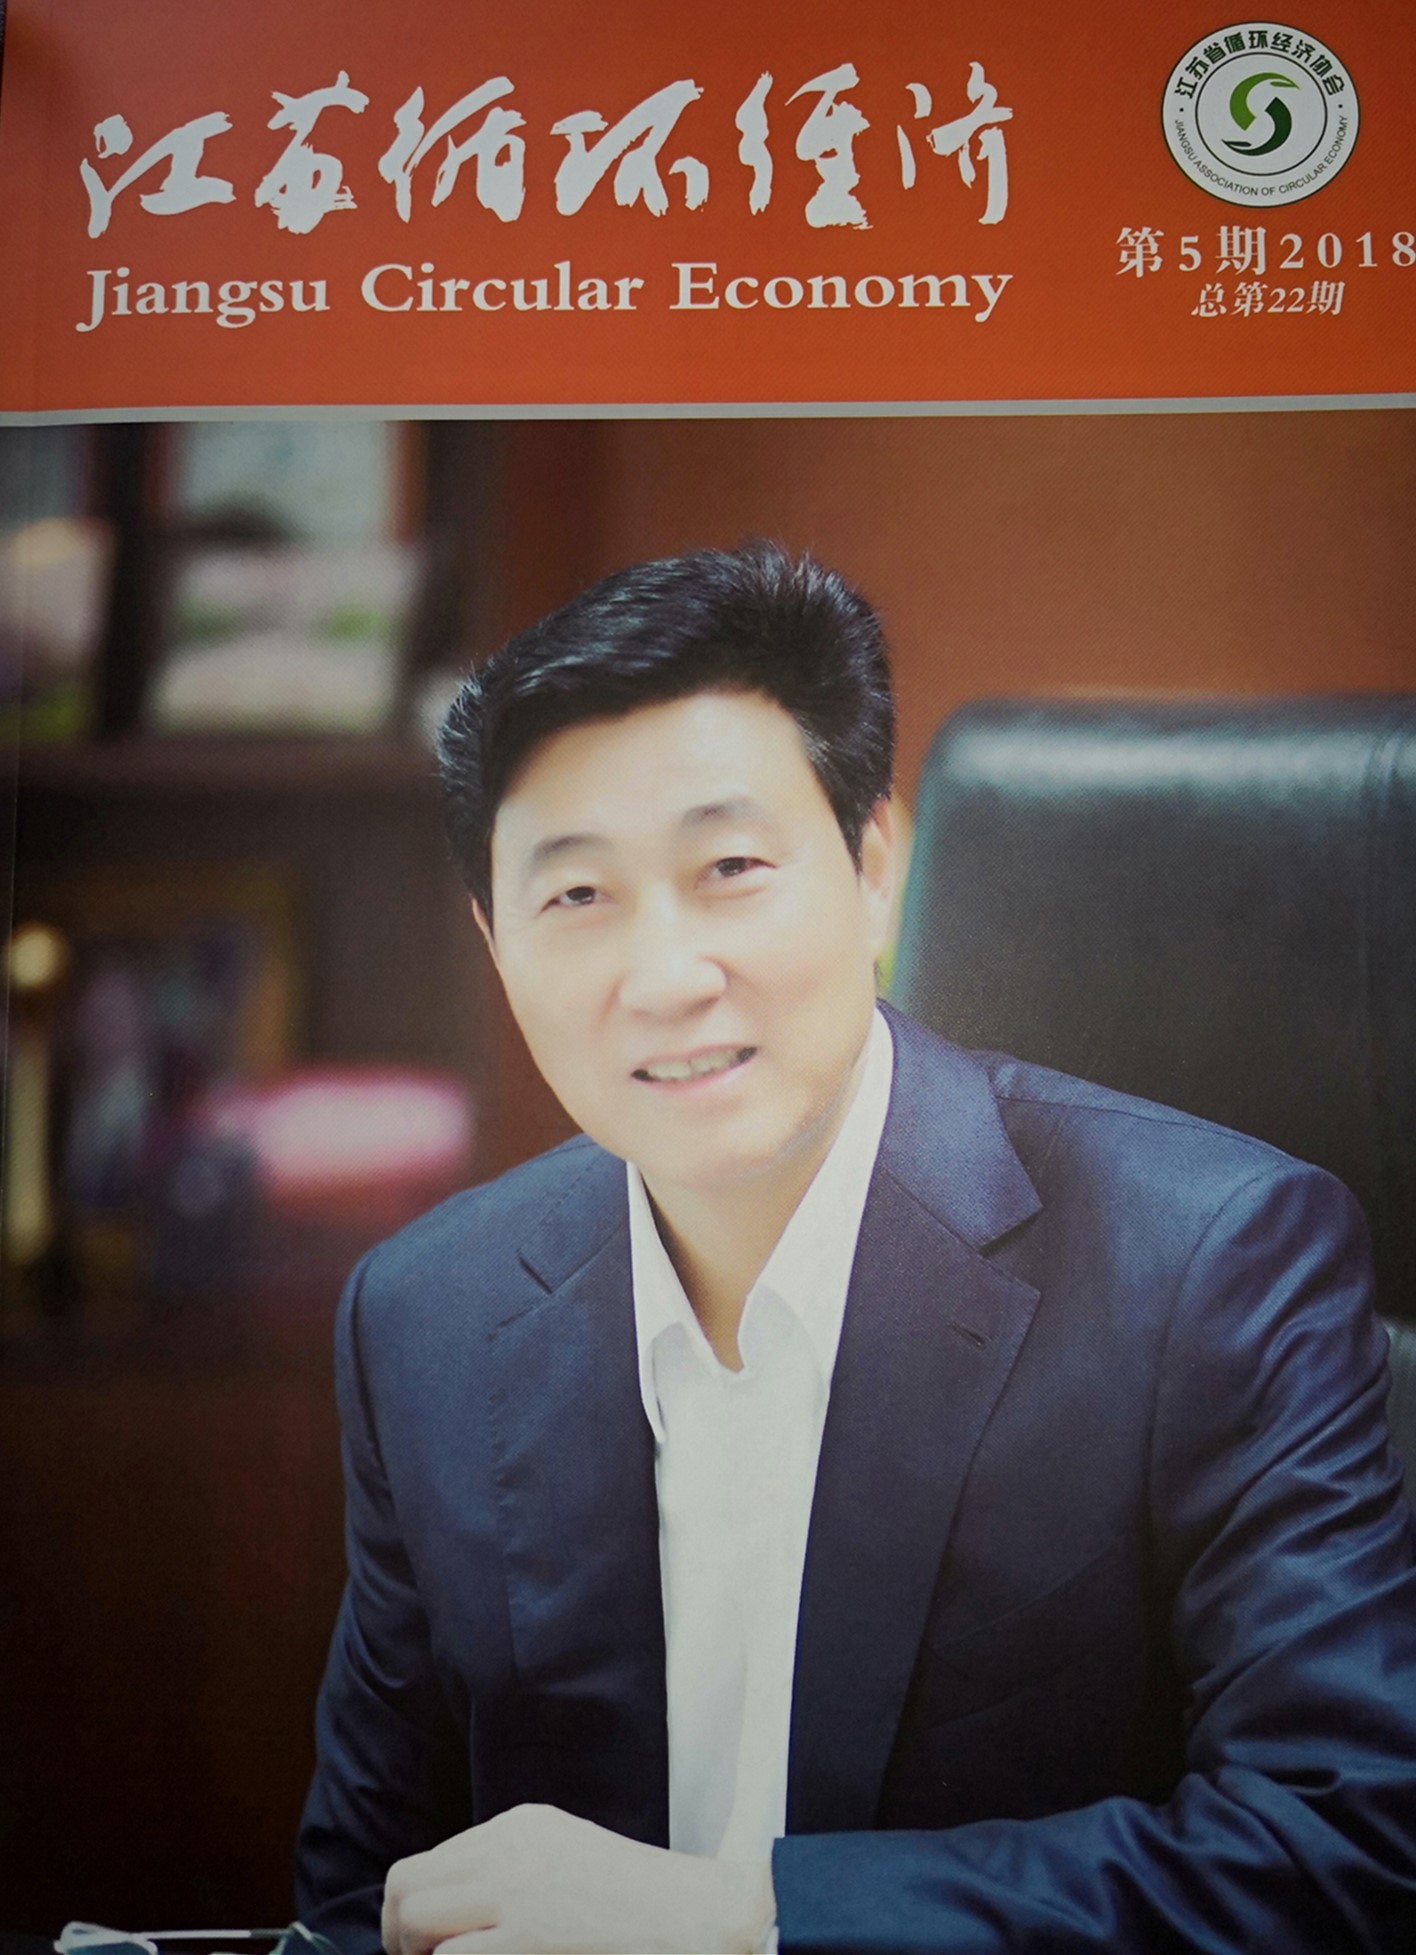 2018第5期《江苏循环经济》出版赠阅，敬请期待